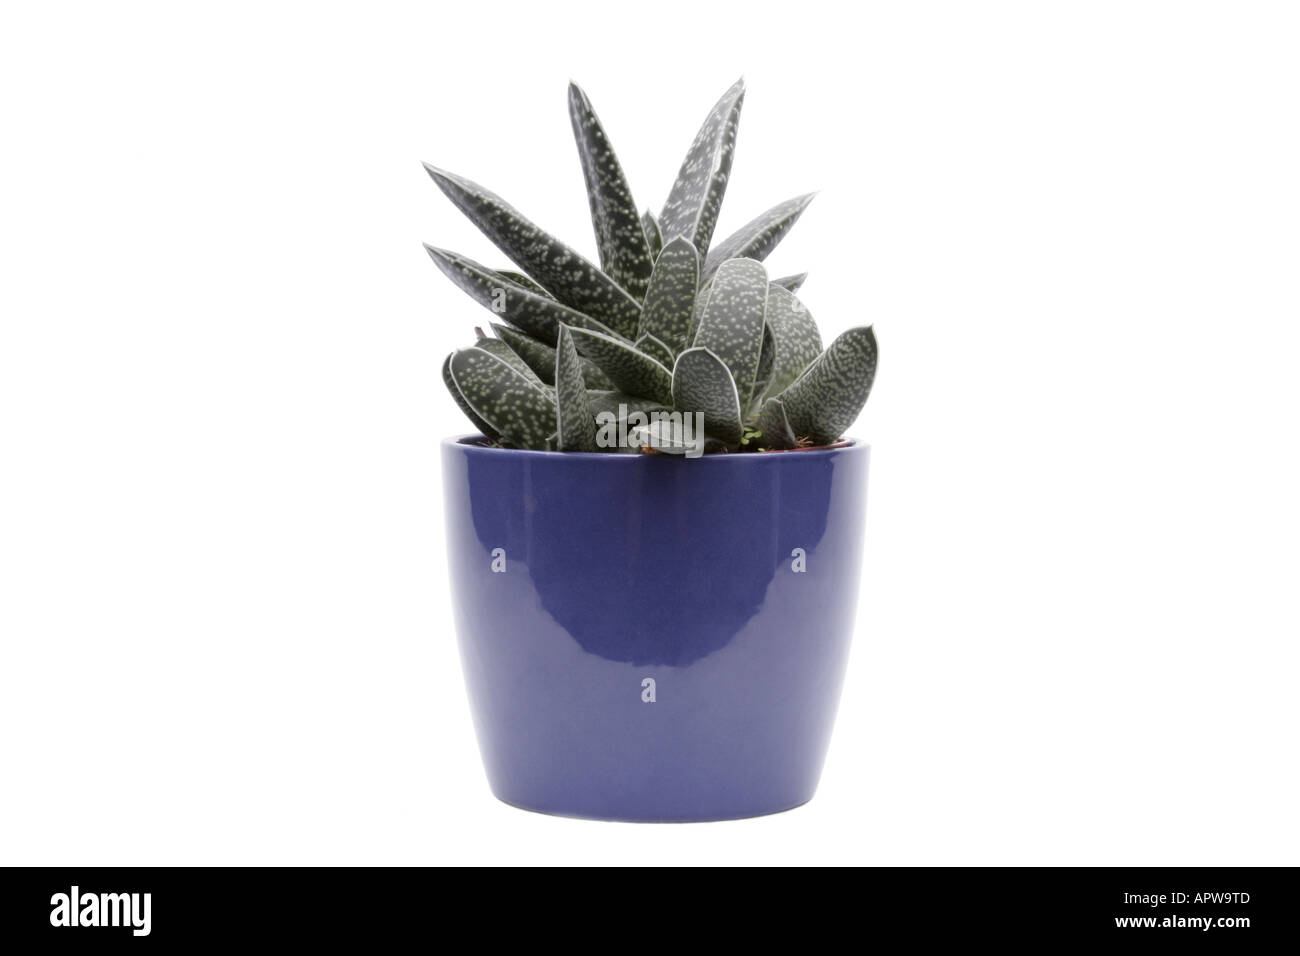 Gasteria caespitosa (Gasteria bicolor, gasteria caespitosa), plant in blue pot Stock Photo